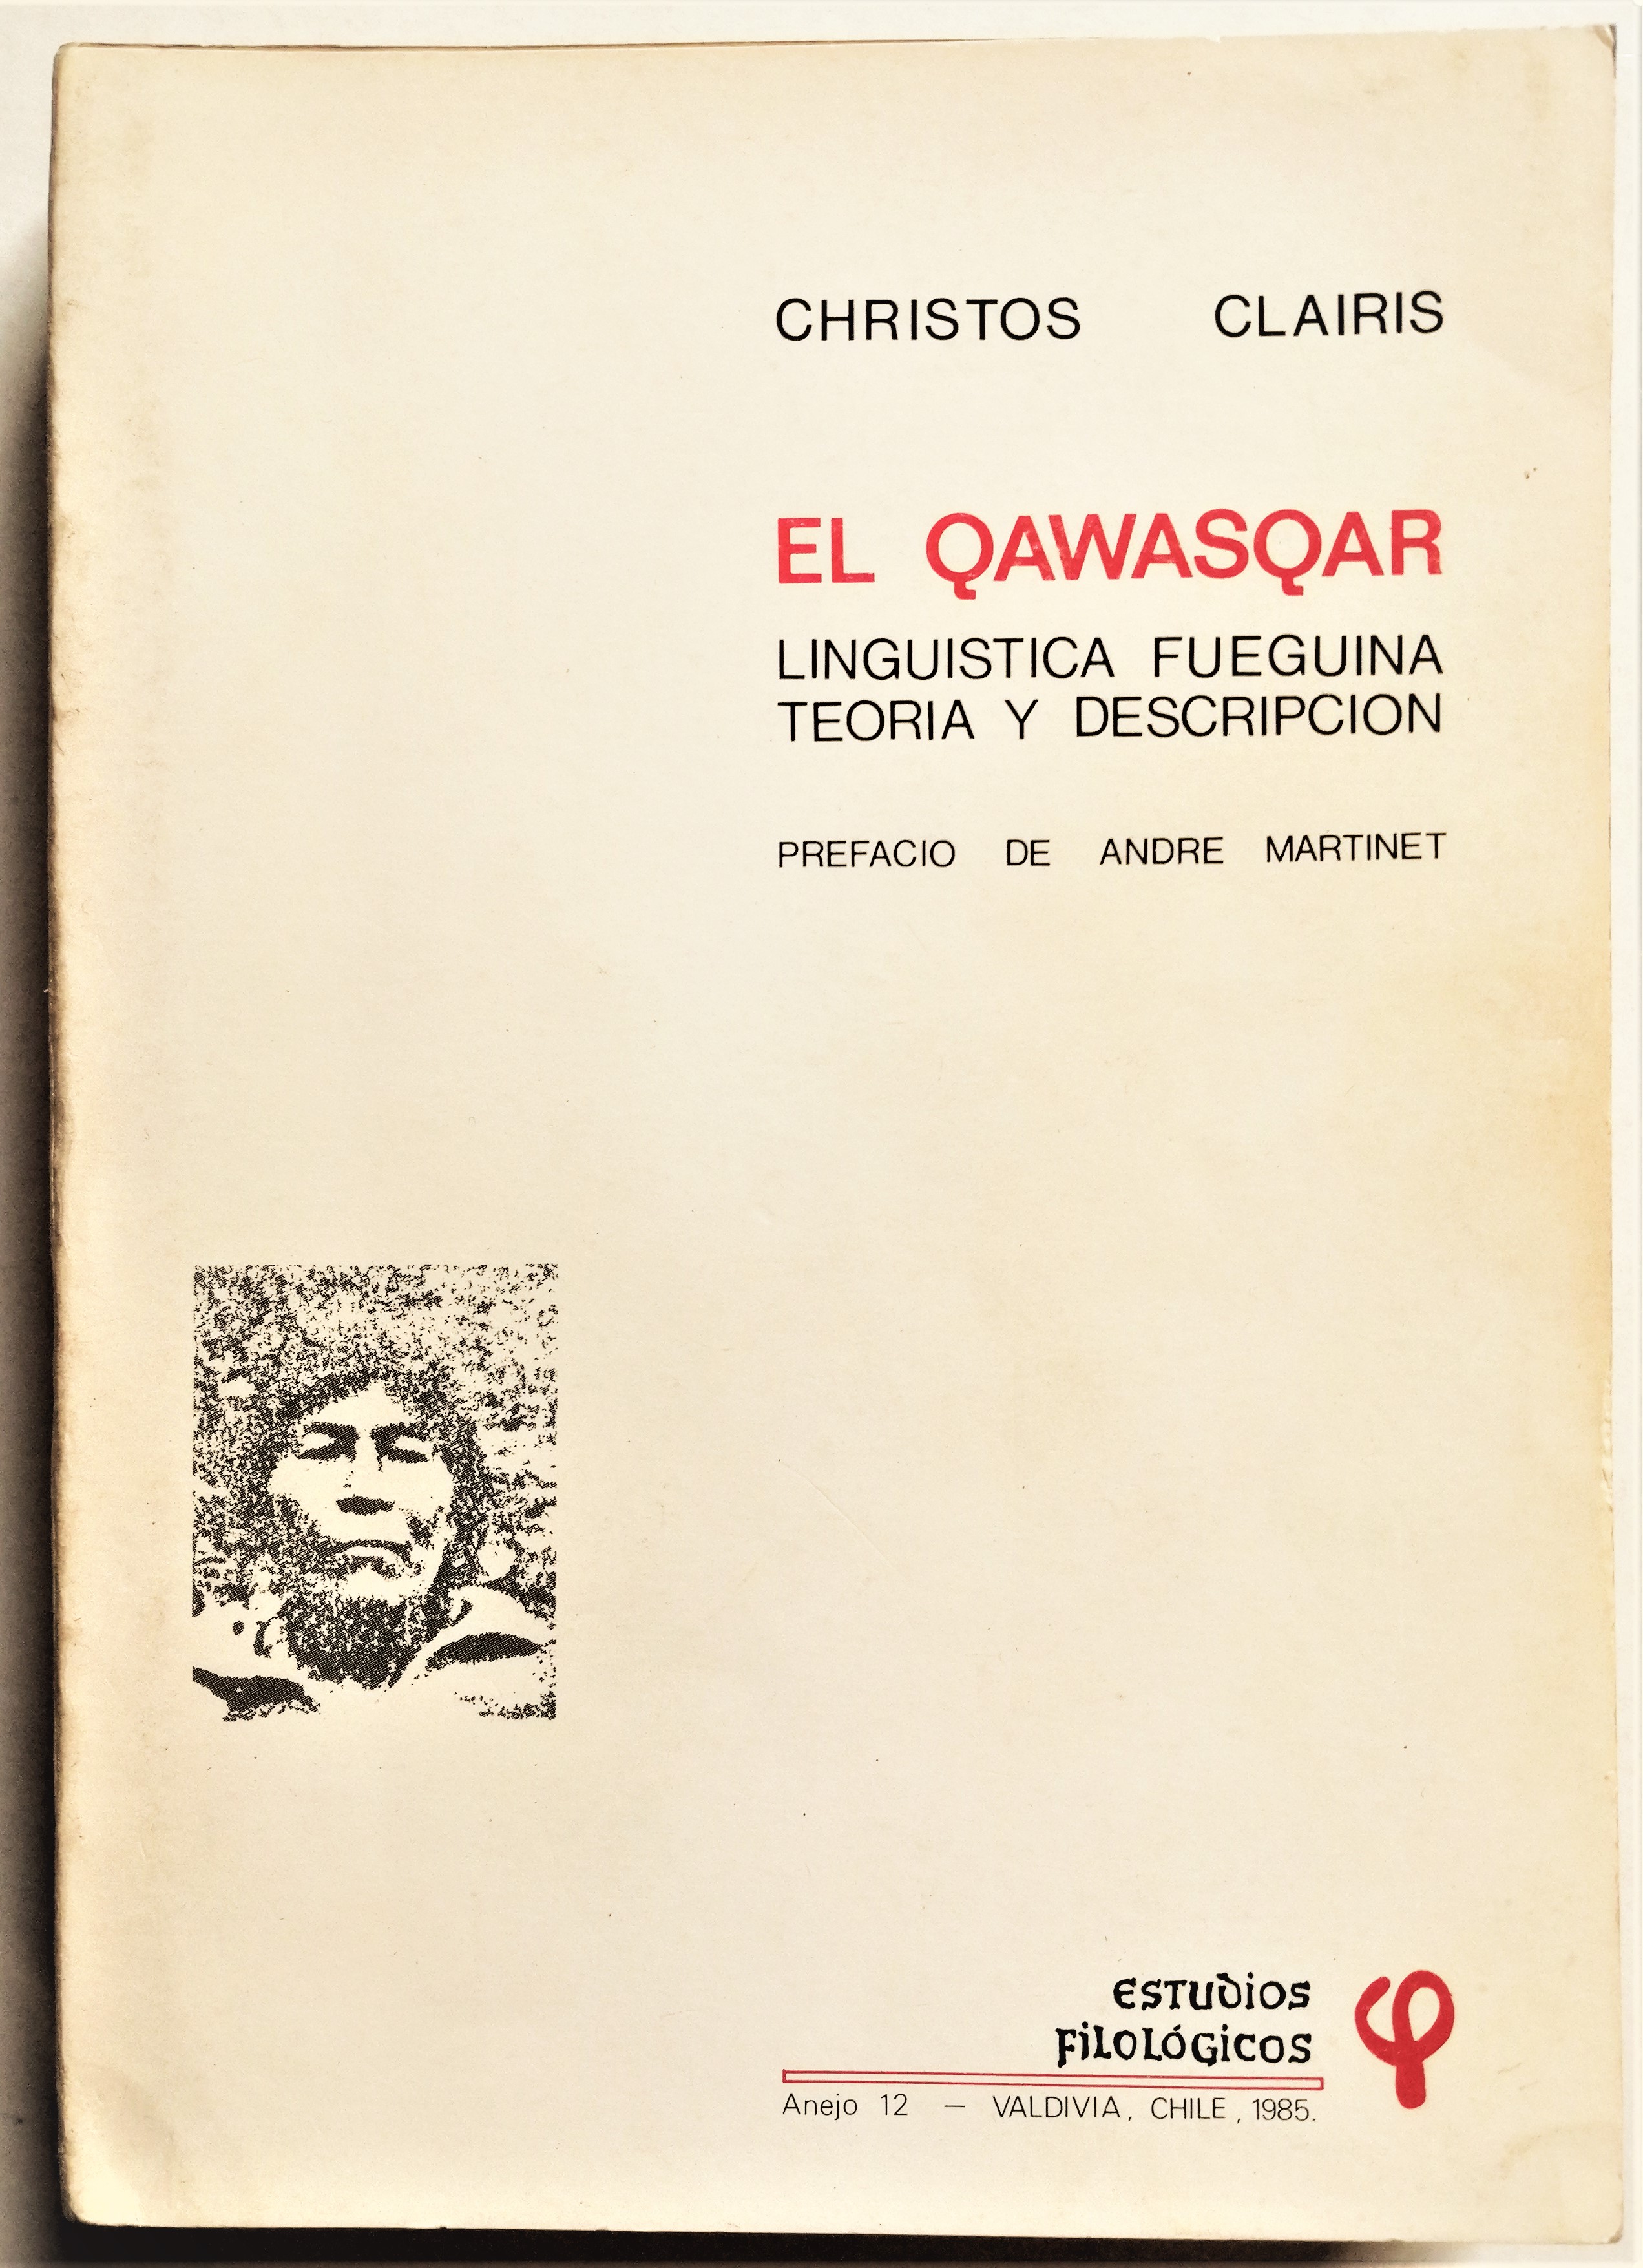 Christos Clairis - El Qawasqar. Lingüística fueguina, teoría y descripción